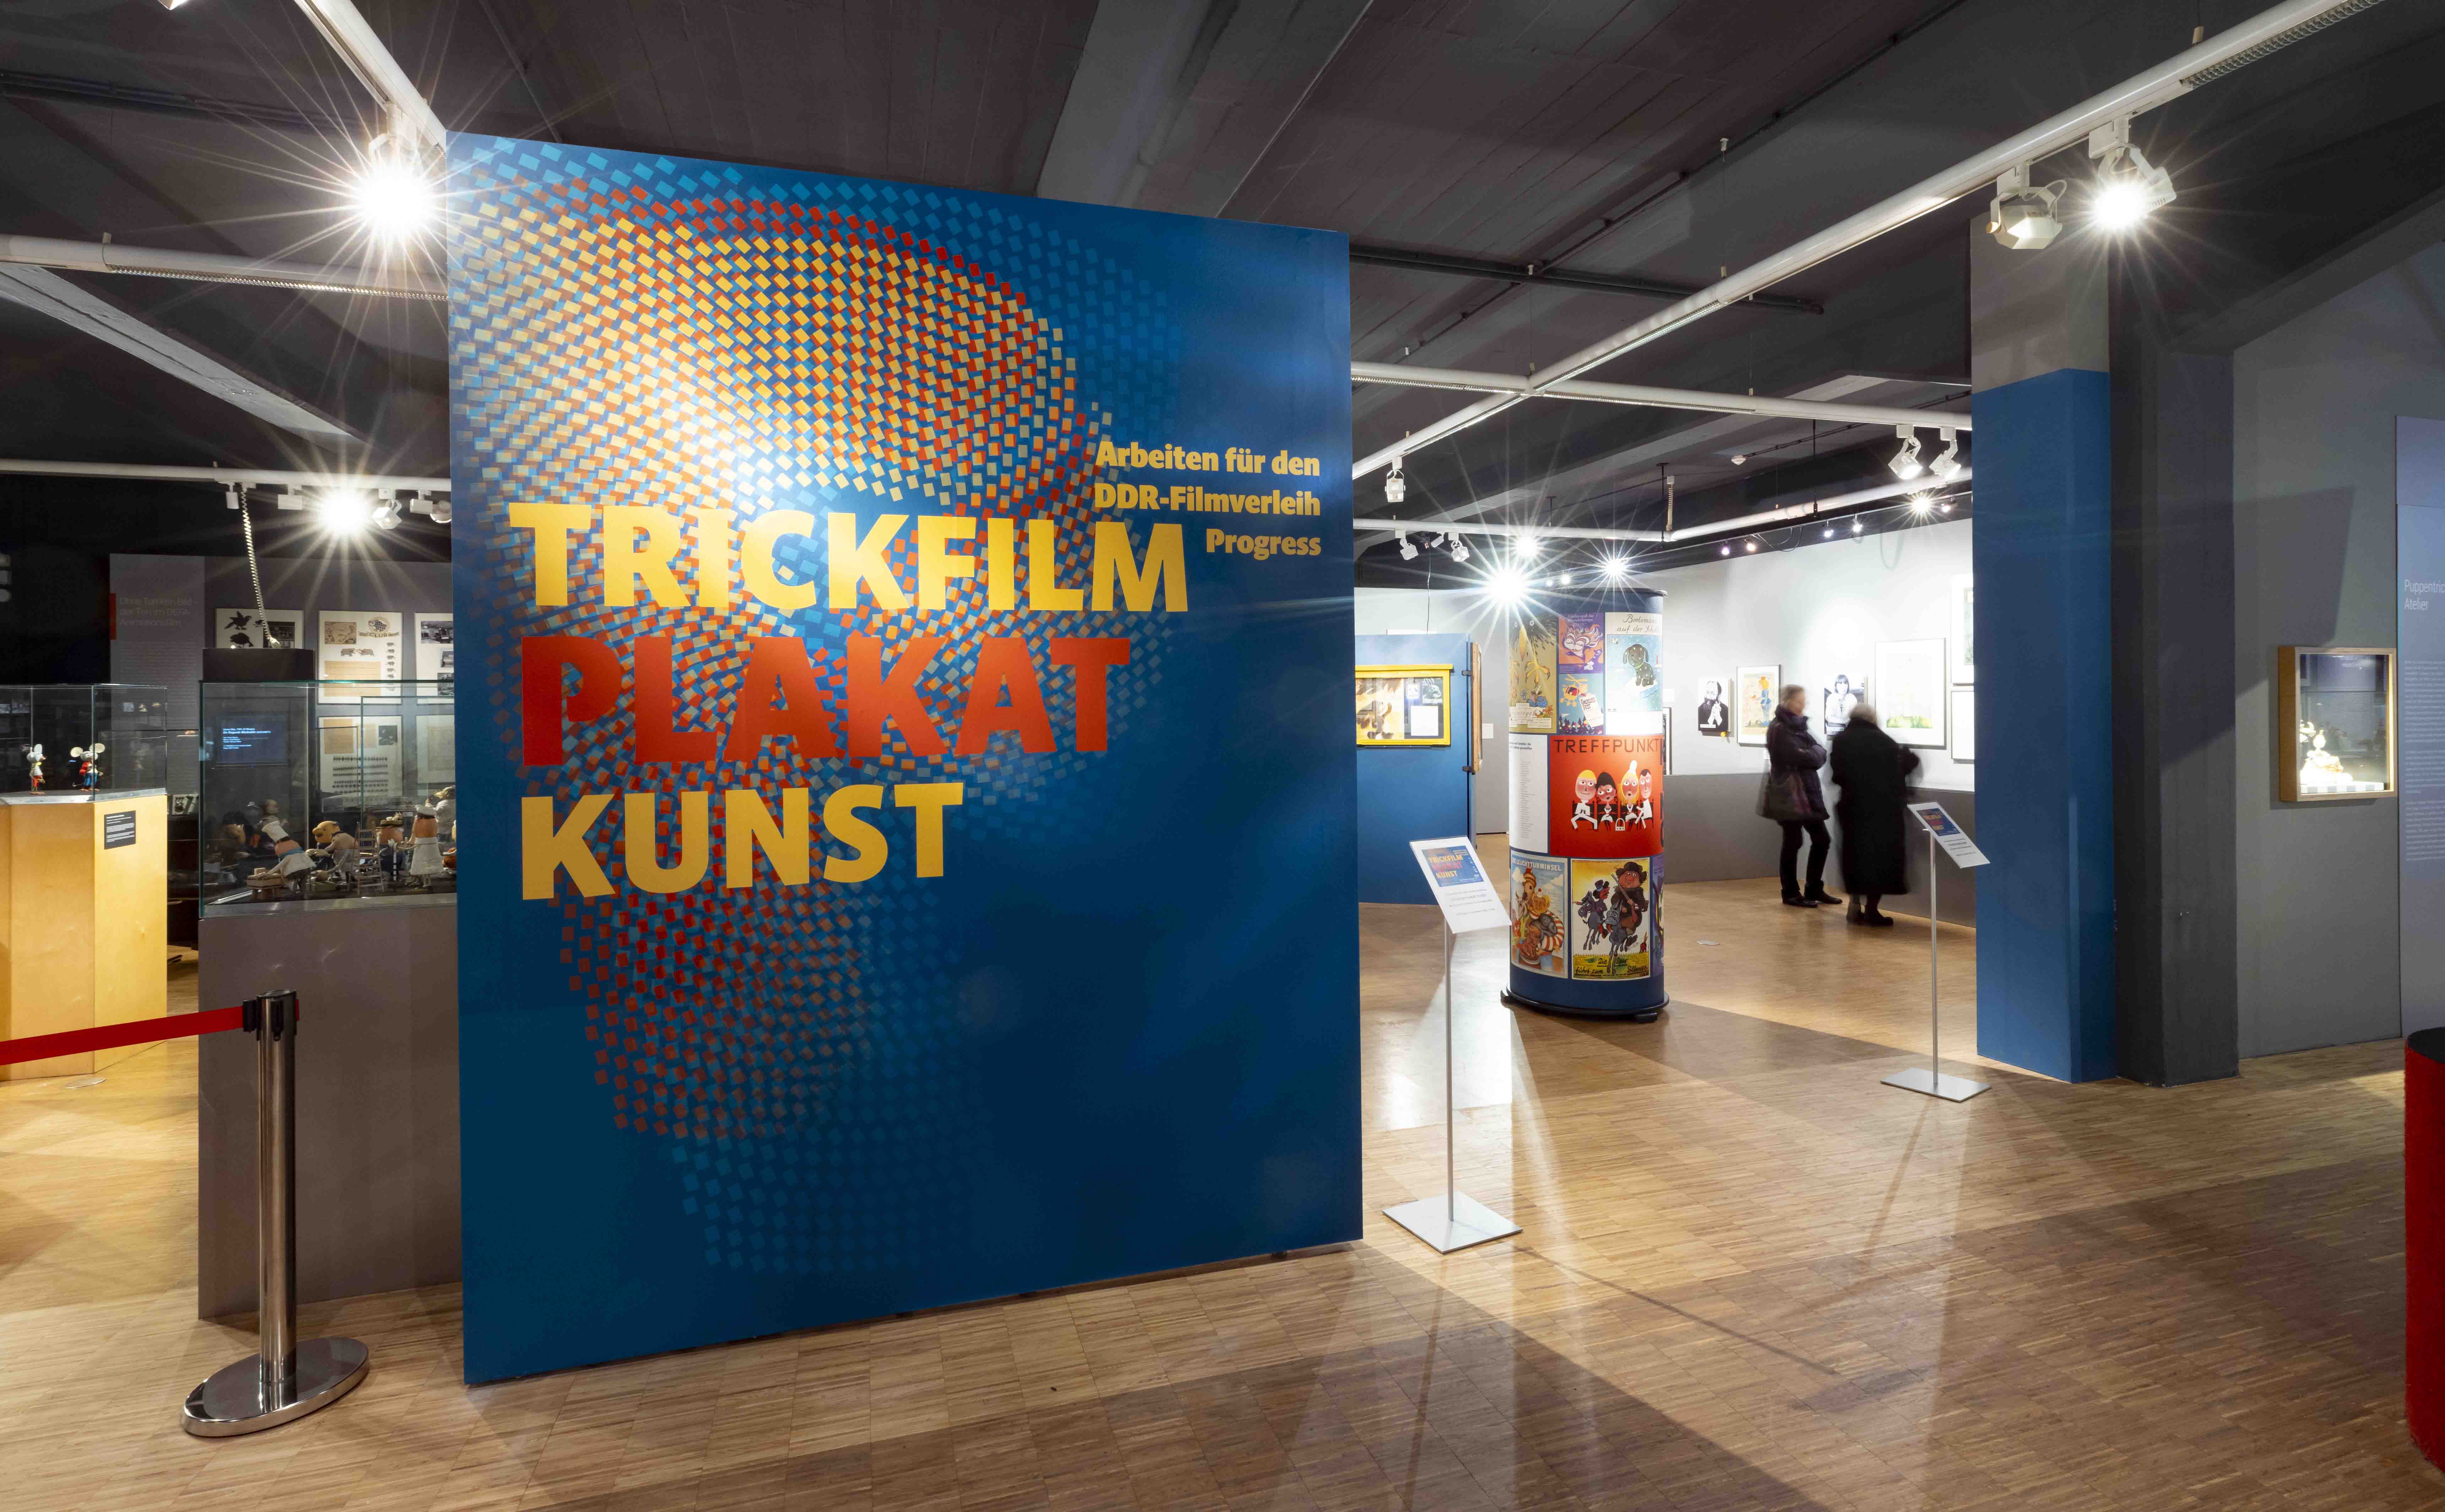 TRICKFILM PLAKAT KUNST – Arbeiten für den DDR-Filmverleih Progress